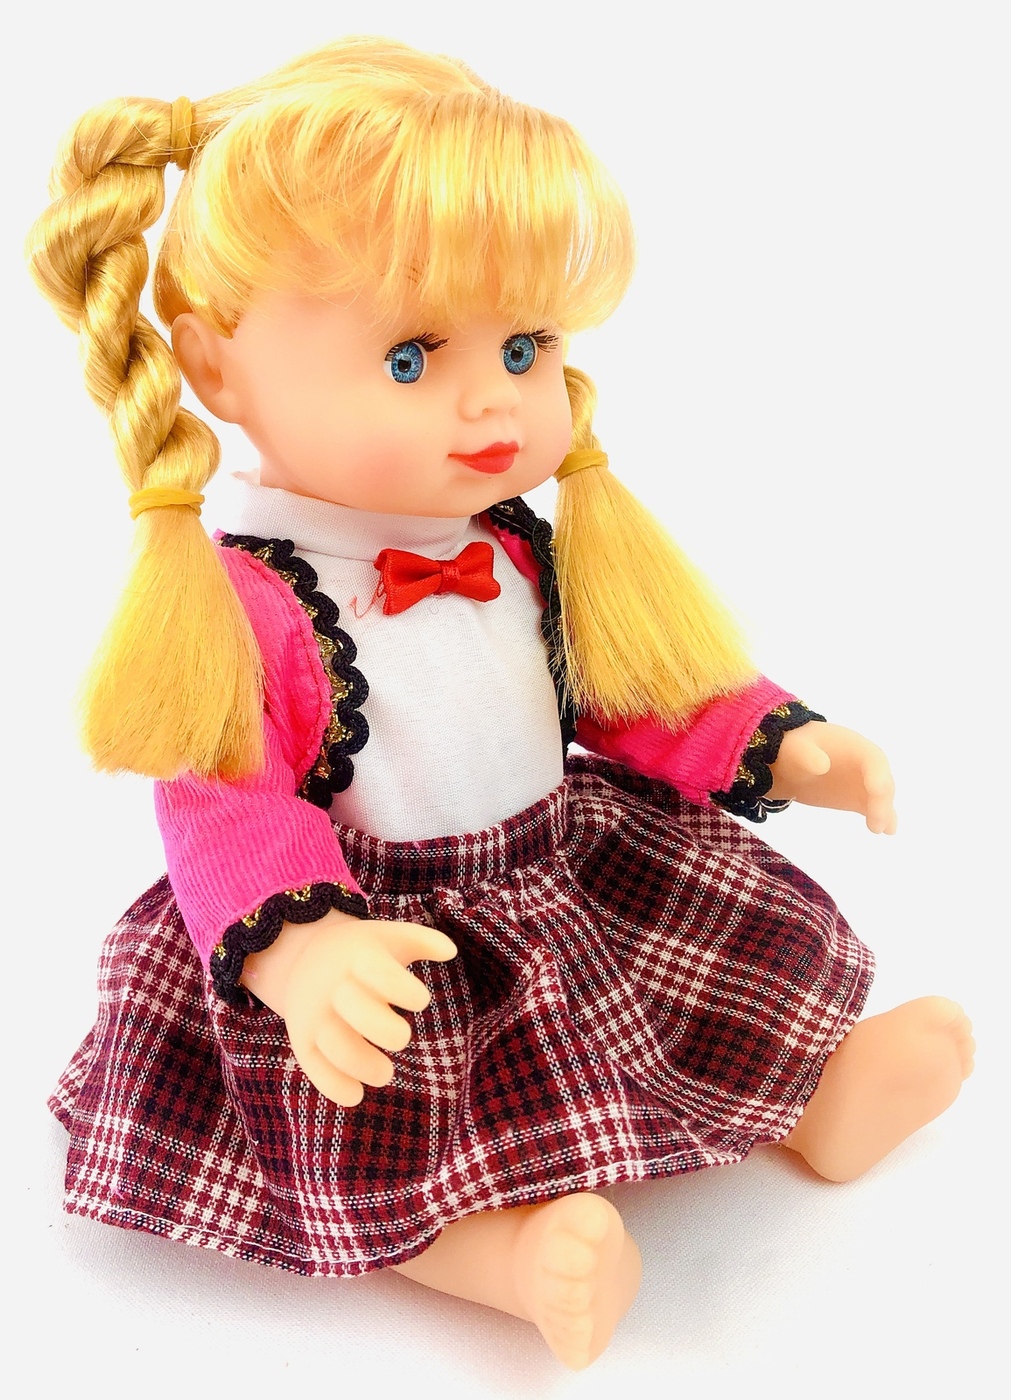 Интерактивная кукла PLAYSMART Алина 5520, говорящая, поет песню про маму, 28 см